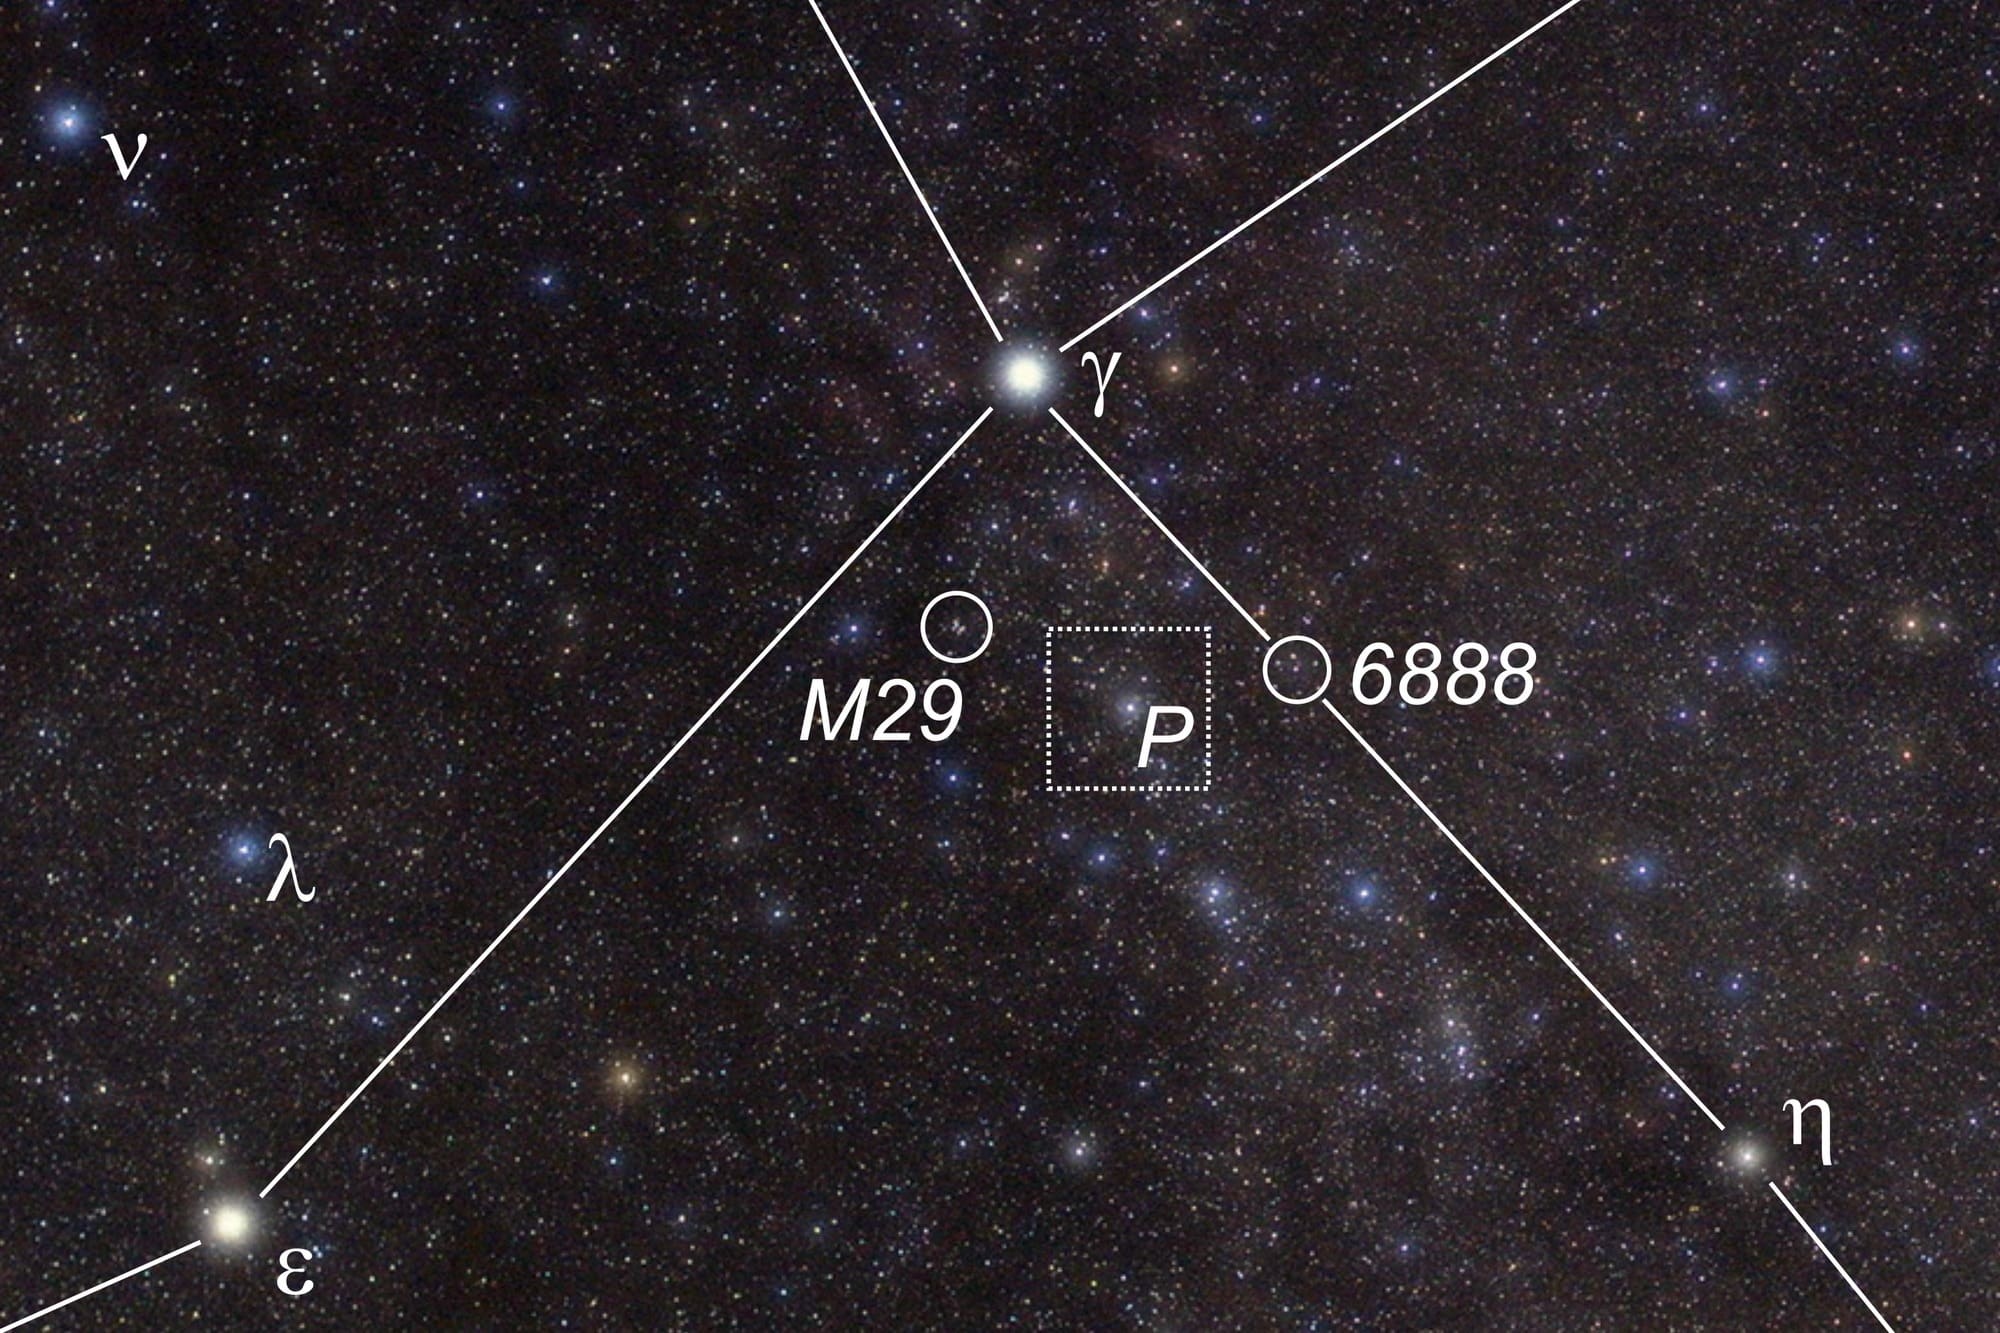 Der Veränderliche P Cygni liegt zwischen dem Sternhaufen M29 und dem Sichelnebel NGC6888